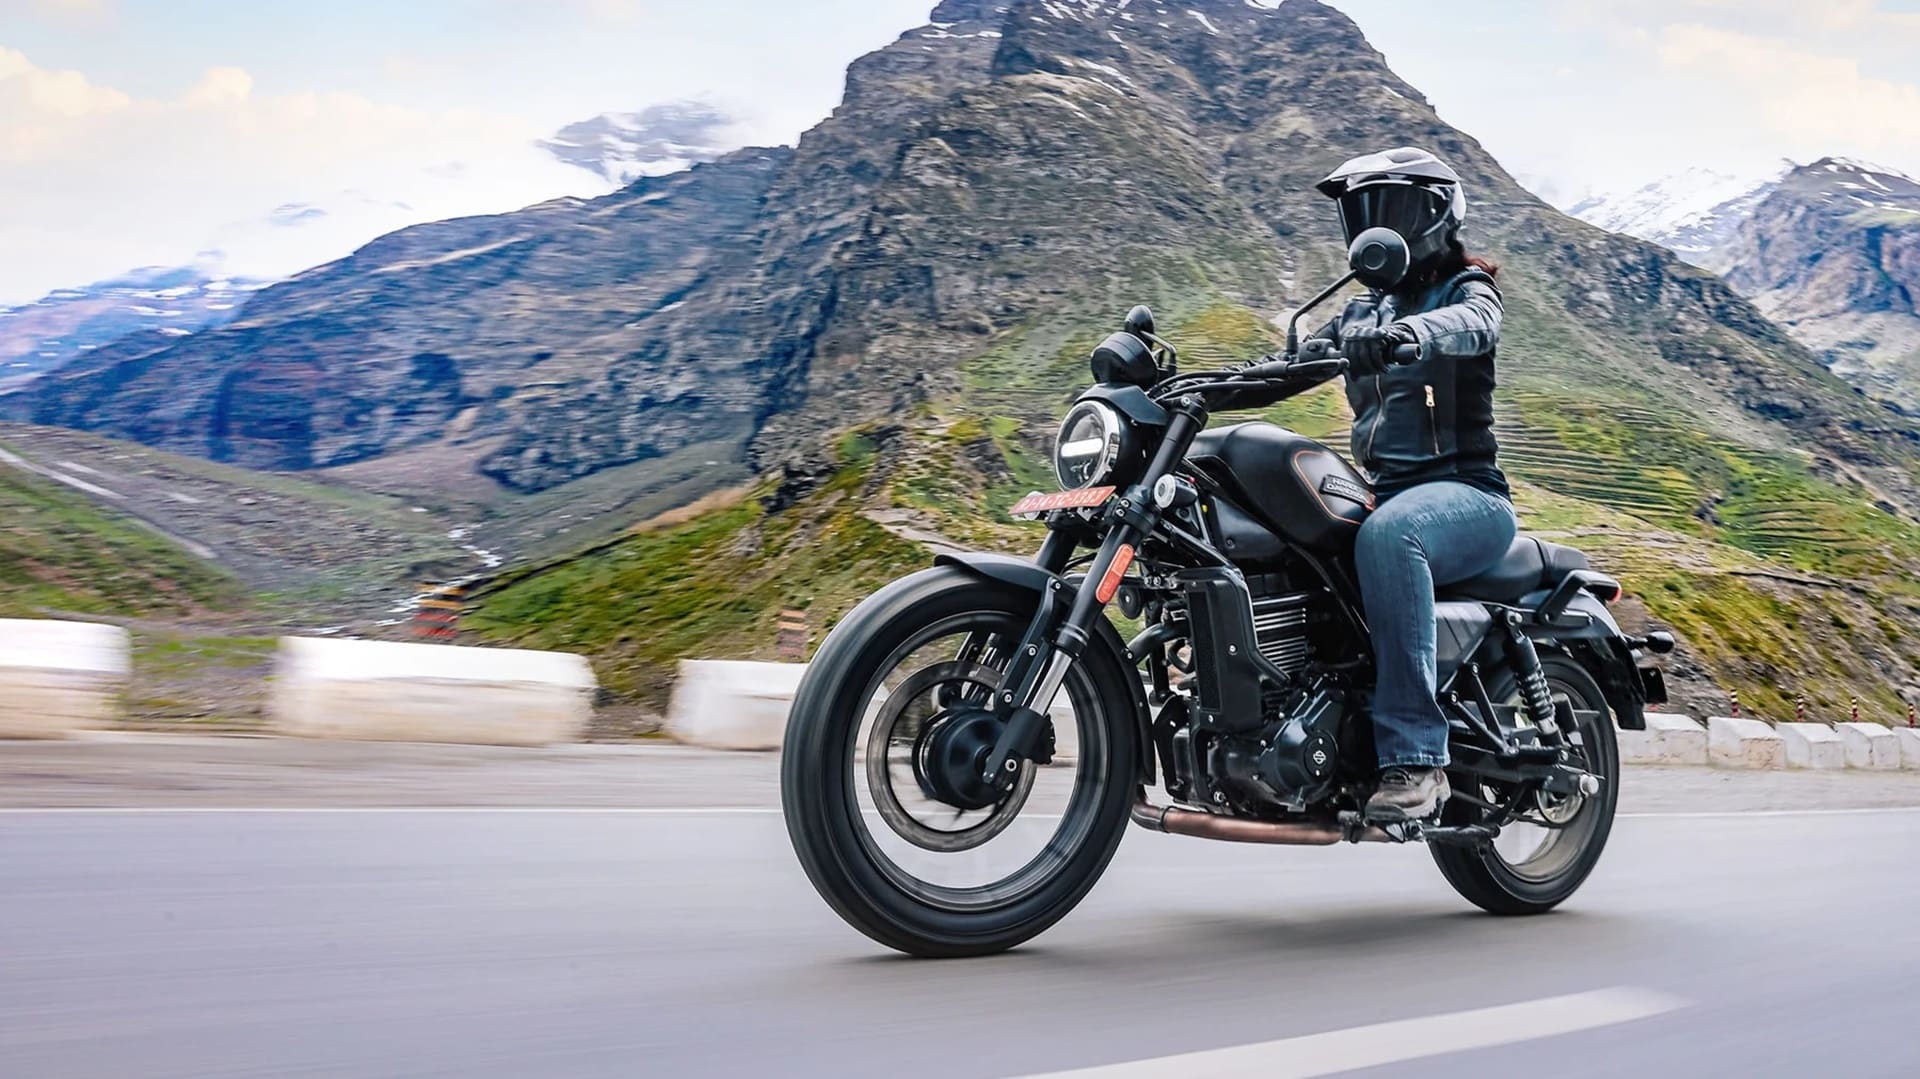 La Harley-Davidson X440 presentada oficialmente en India